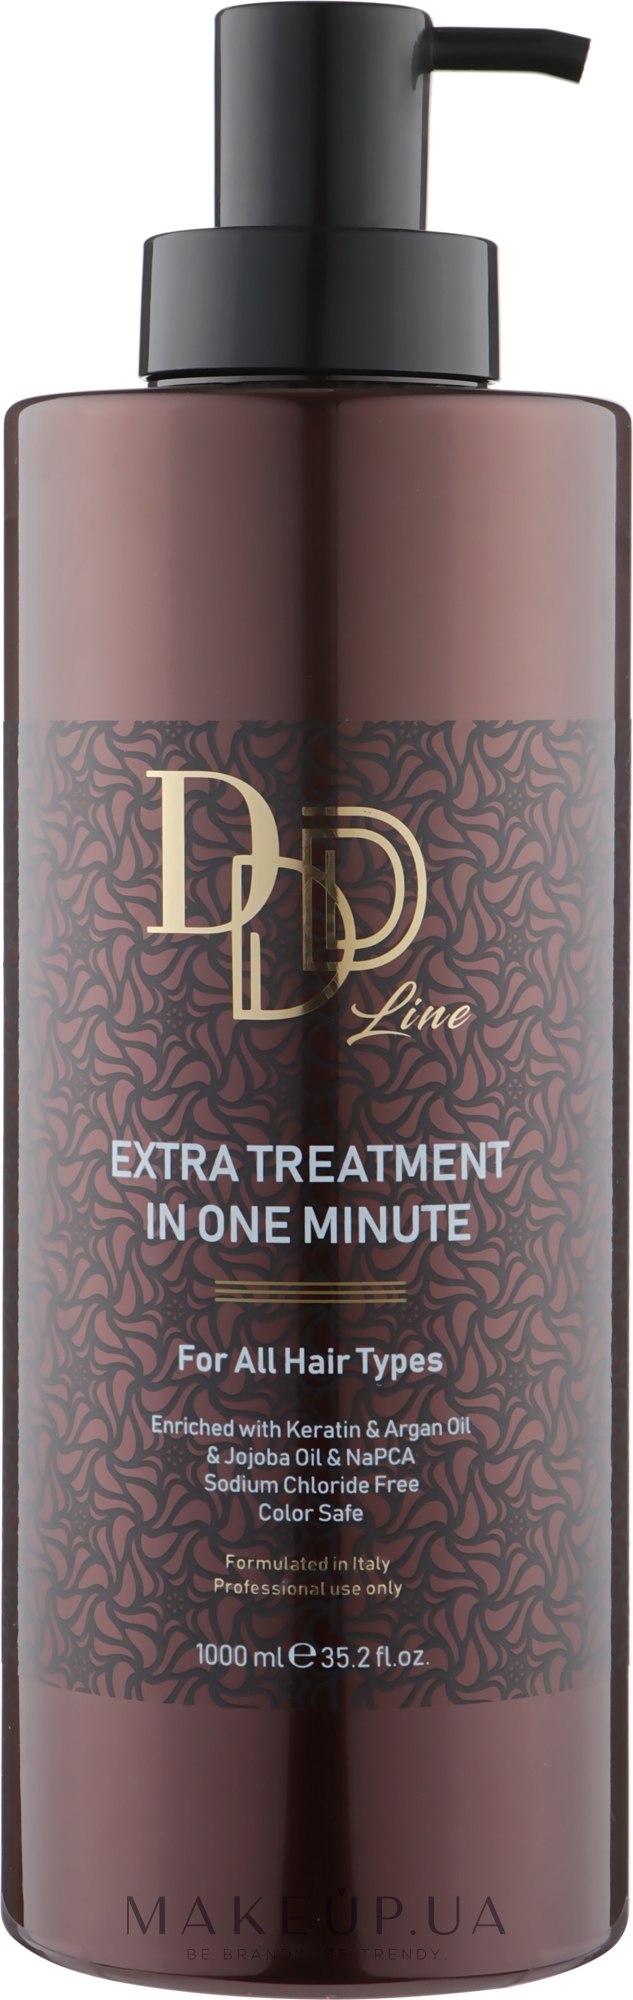 Кондиціонер для волосся "Екстратерапія за одну хвилину" - Bingo Hair Cosmetic 3D Line Extra Treatment In One Minute — фото 1000ml